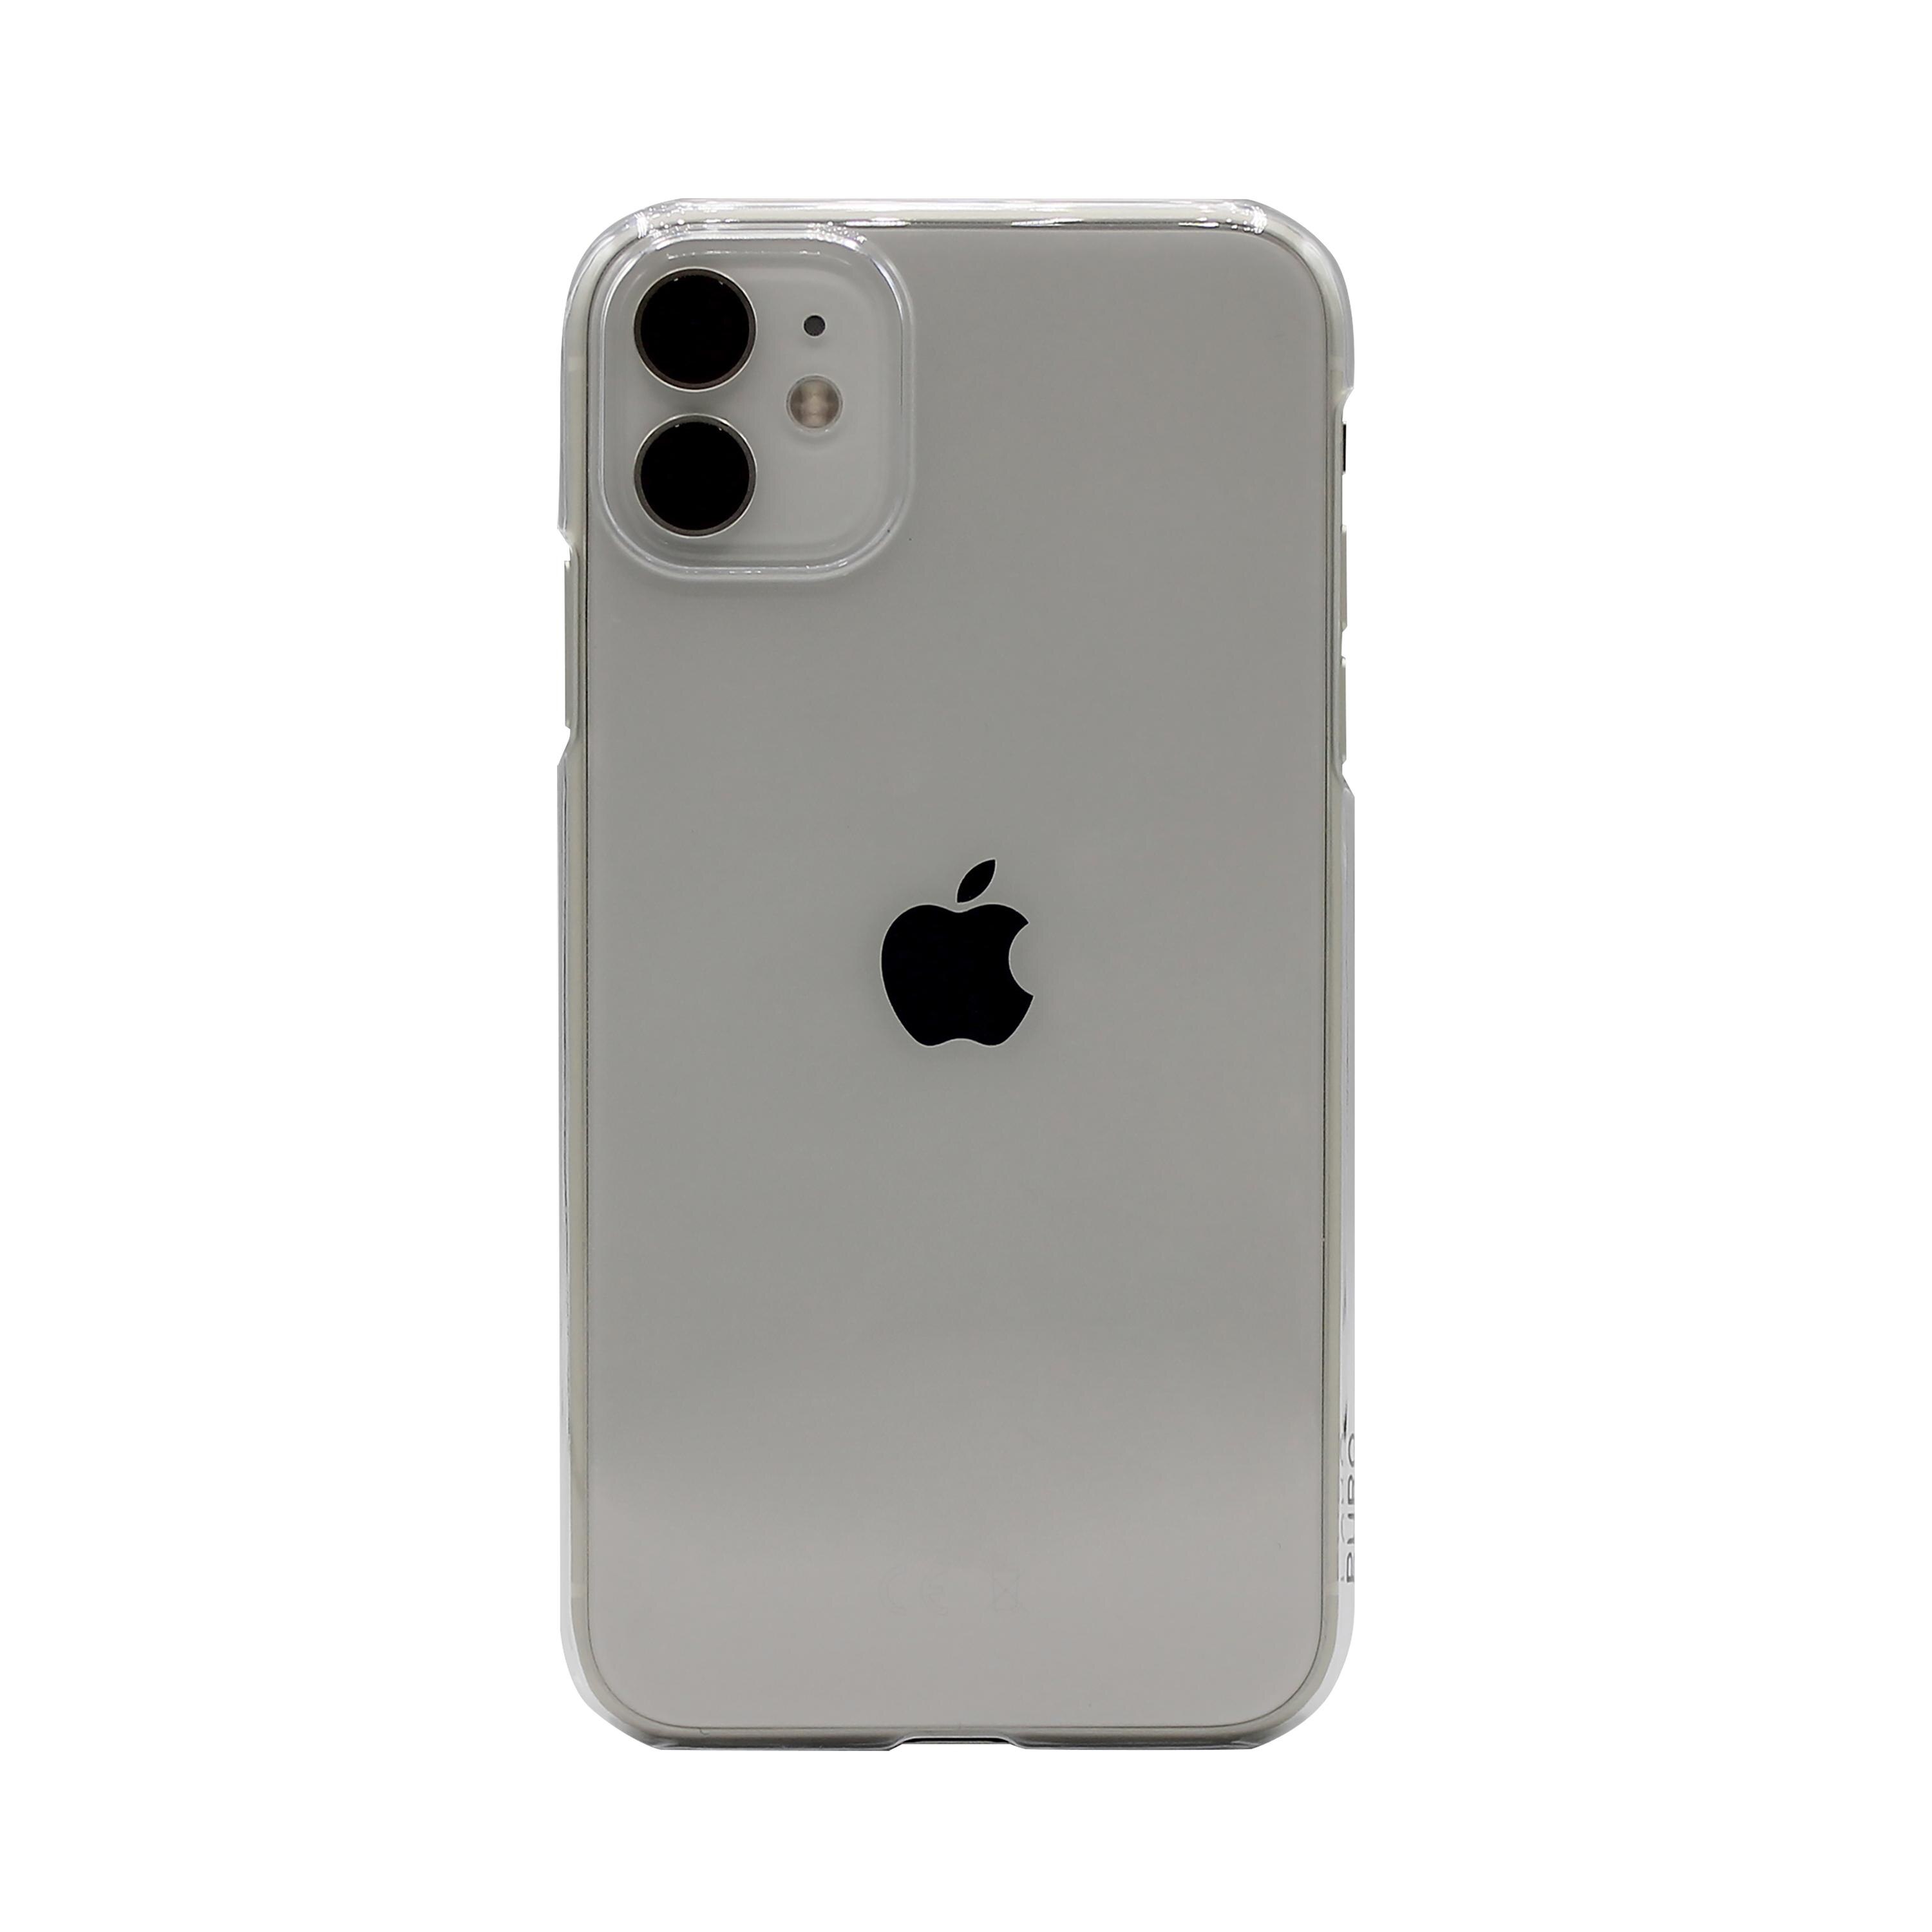 Recicle Policarbonate Case iPhone 12 Mini Transparent